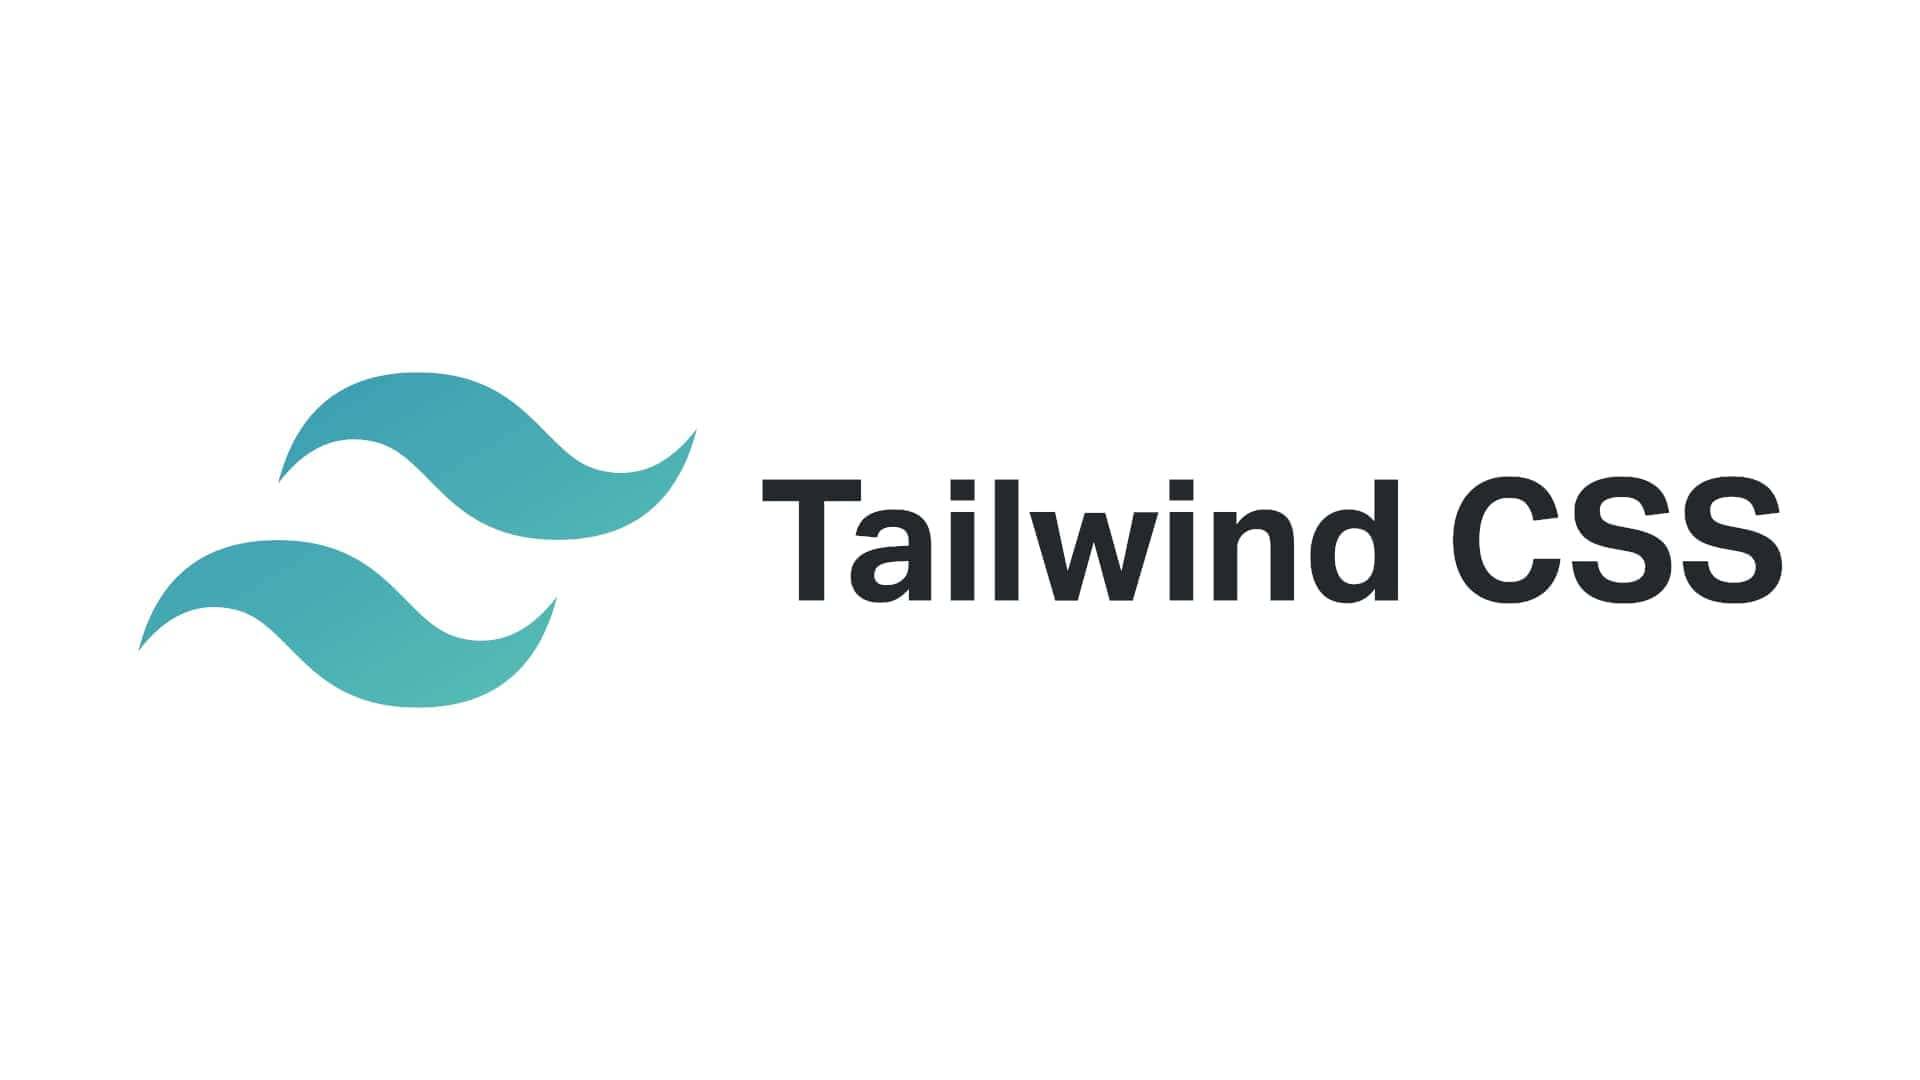 Tác dụng giảm tải của Tailwind CSS - Jefrydco: Tailwind CSS là một công cụ rất hữu ích cho các nhà thiết kế web. Nó giúp bạn tạo ra những trang web có giao diện đẹp, dễ sử dụng và load nhanh hơn. Và hôm nay, bạn có thể tìm hiểu thêm về tác dụng giảm tải của Tailwind CSS từ Jefrydco bằng cách xem hình ảnh liên quan.